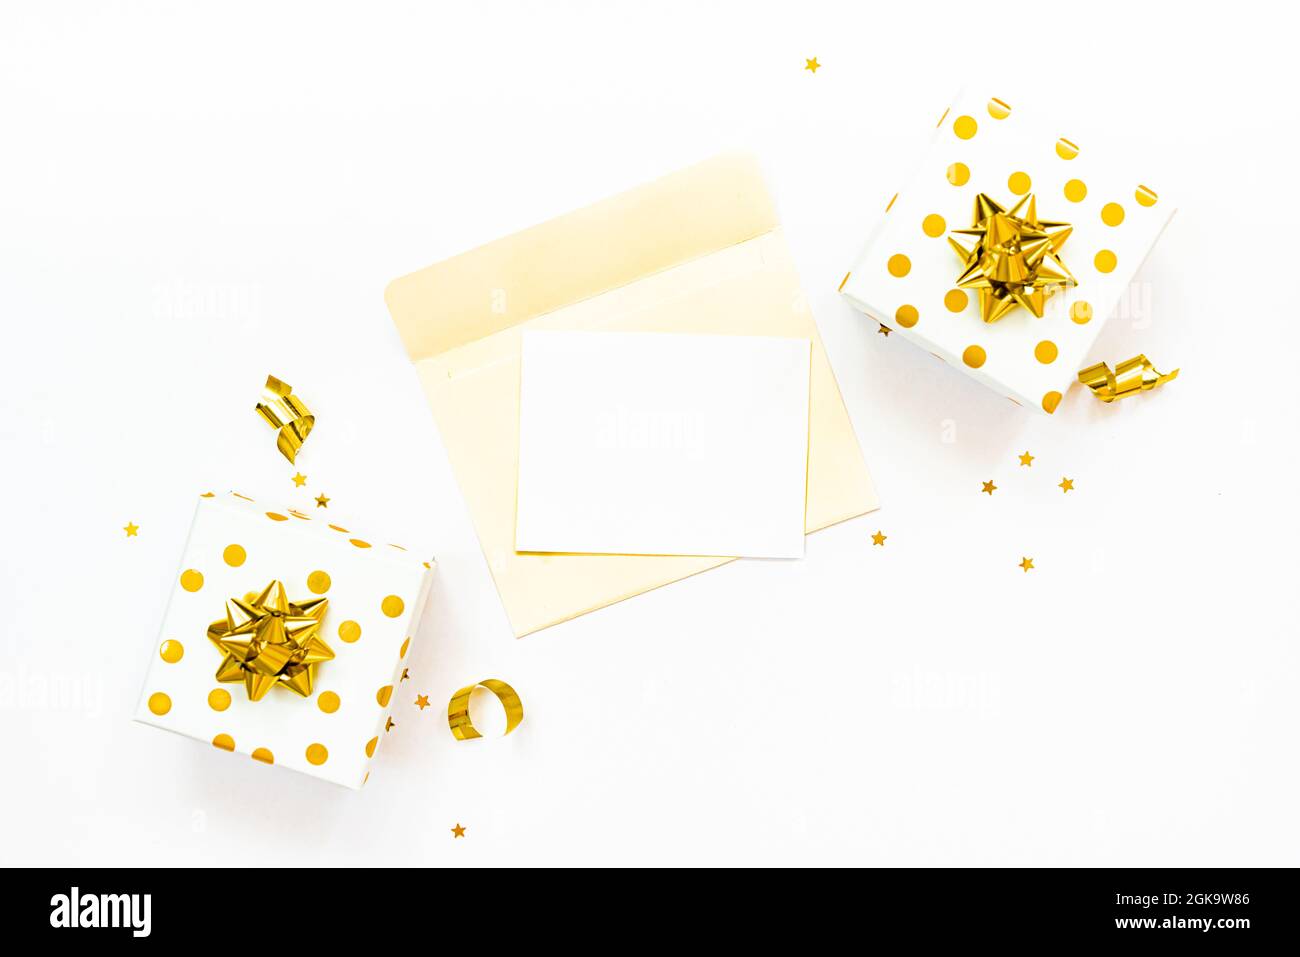 Vue de dessus des boîtes-cadeaux à pois dorés et de l'enveloppe ouverte avec une carte vide sur fond blanc. Espace de copie, maquette. Banque D'Images